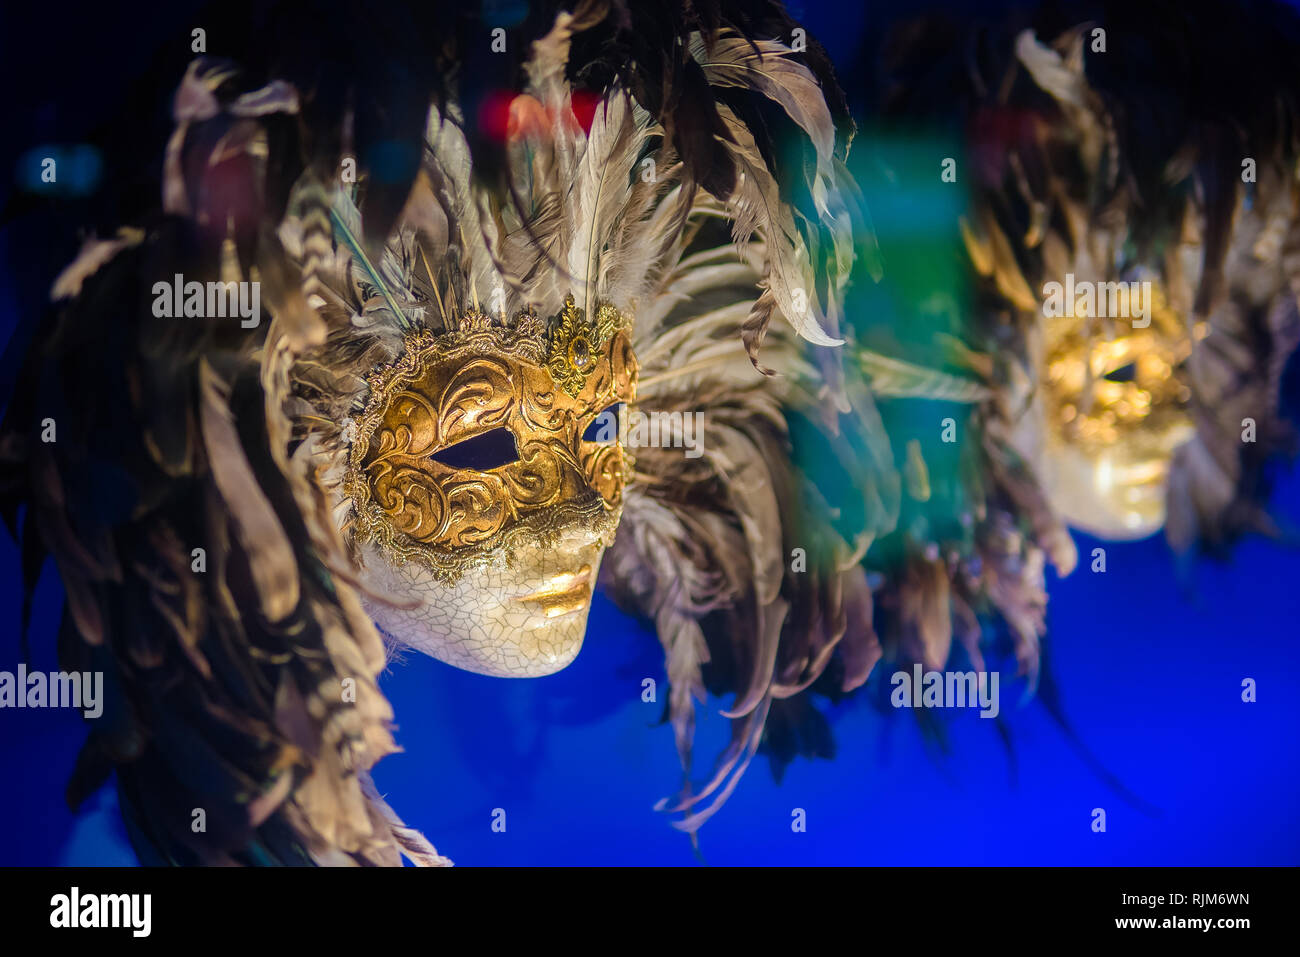 Venetian masks for carnival in Venice, Italy. Venice carnival masks at night Stock Photo